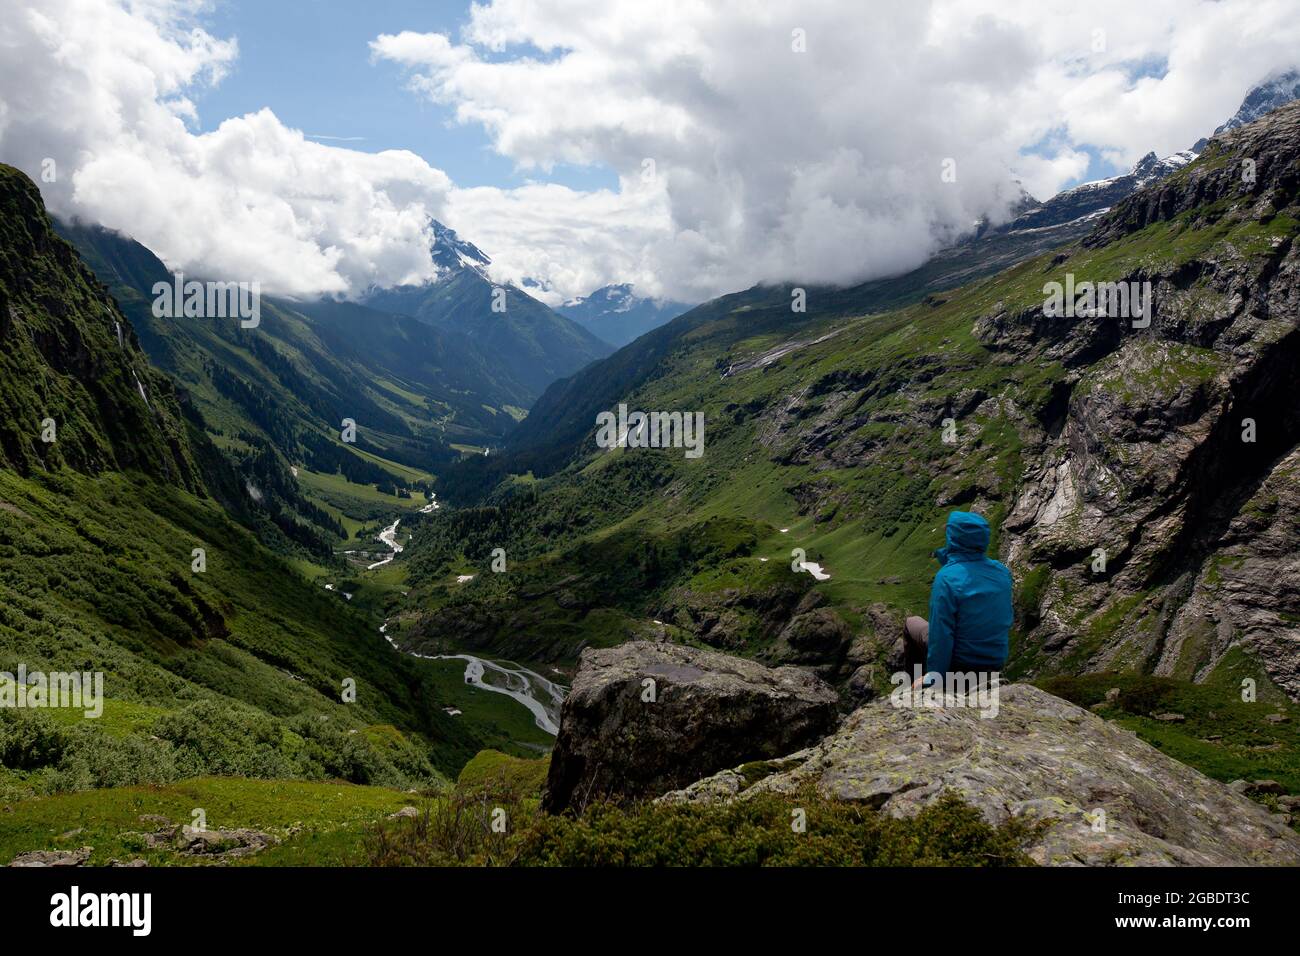 Valley Madraner uri schweiz Wanderjacke blau Stockfotografie - Alamy